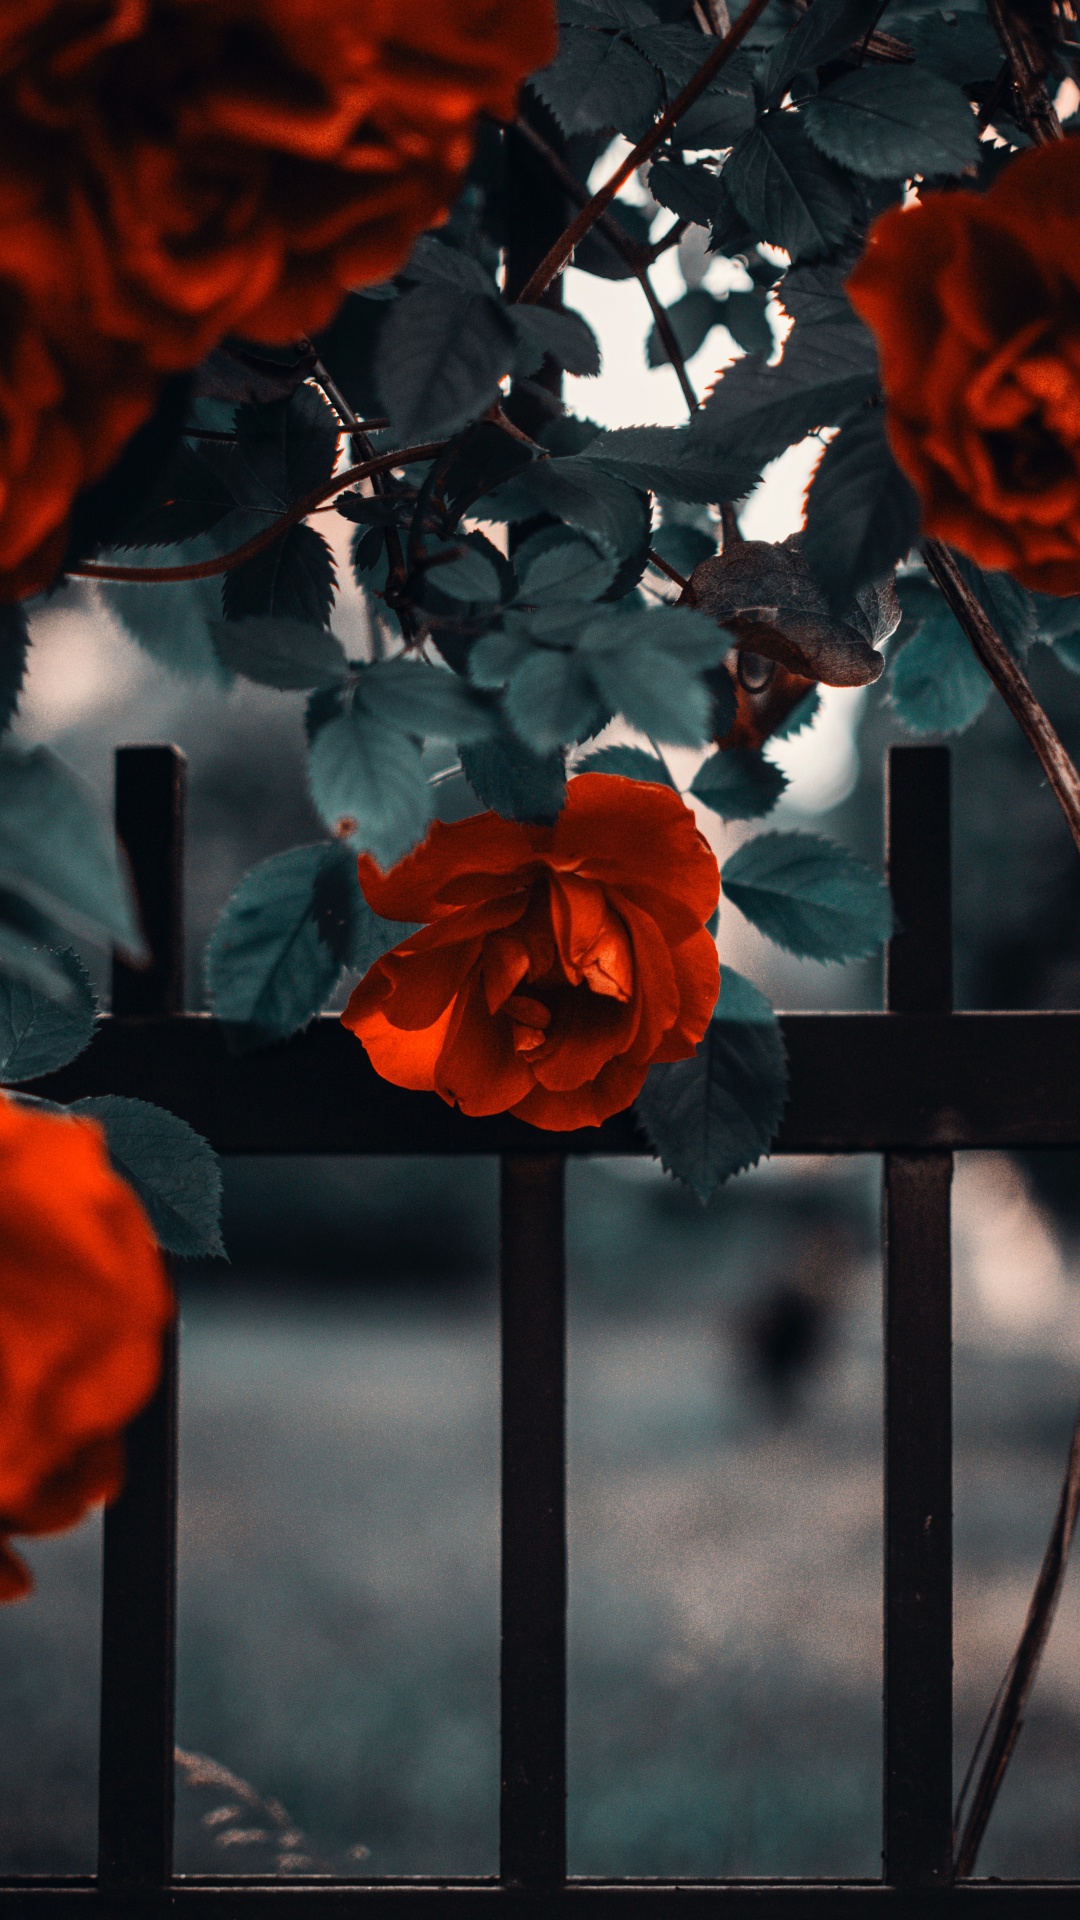 Roses Oranges en Fleurs Pendant la Journée. Wallpaper in 1080x1920 Resolution